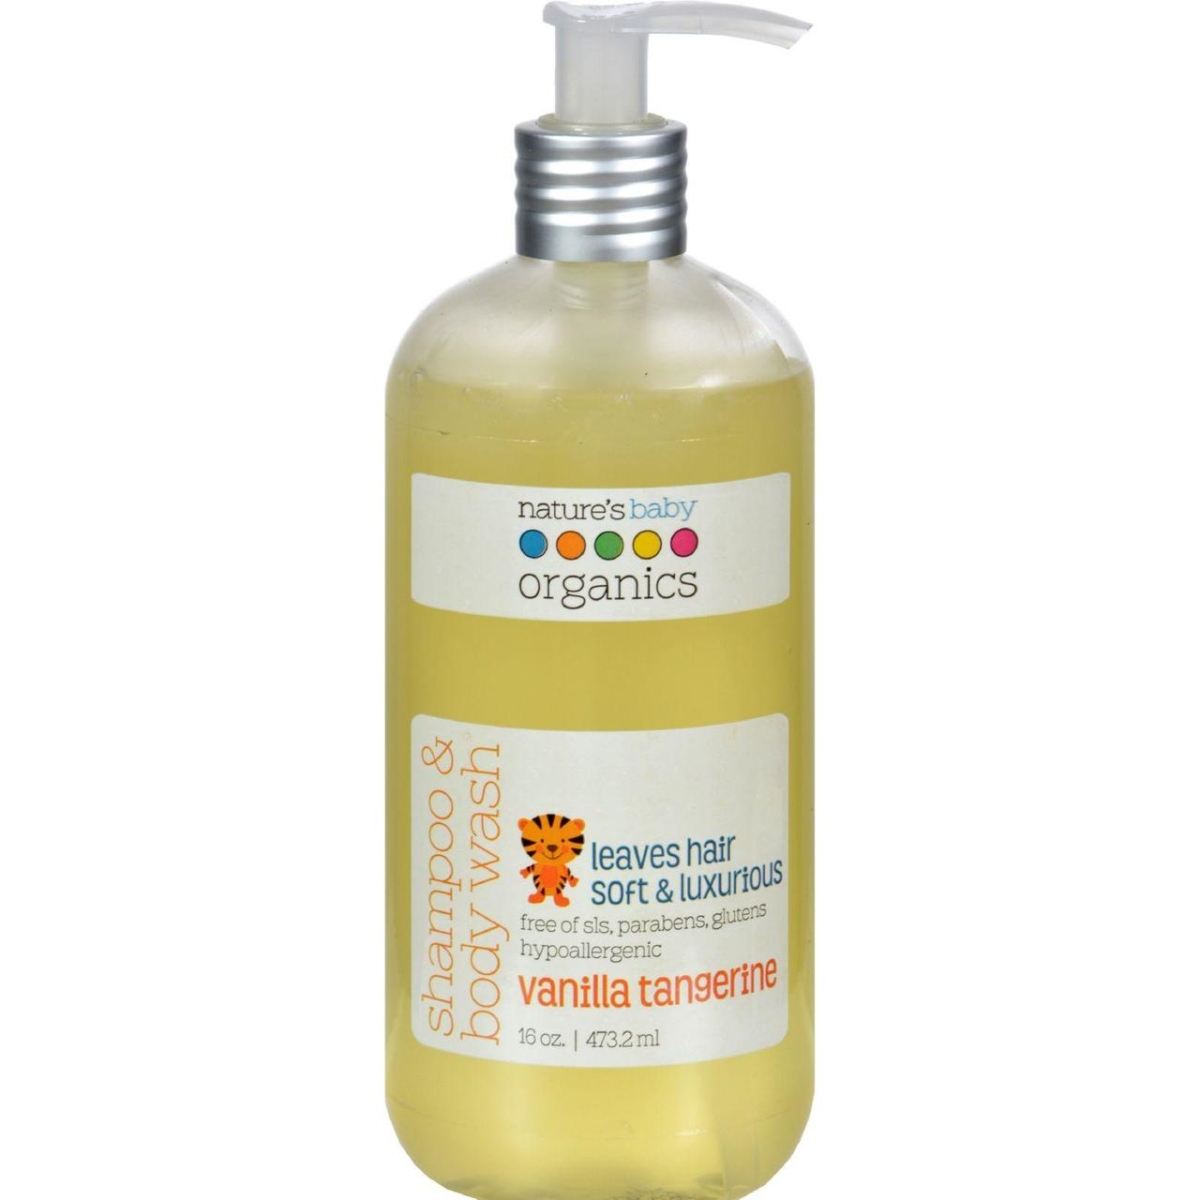 Hg0752436 16 Fl Oz Shampoo & Body Wash Vanilla Tangerine